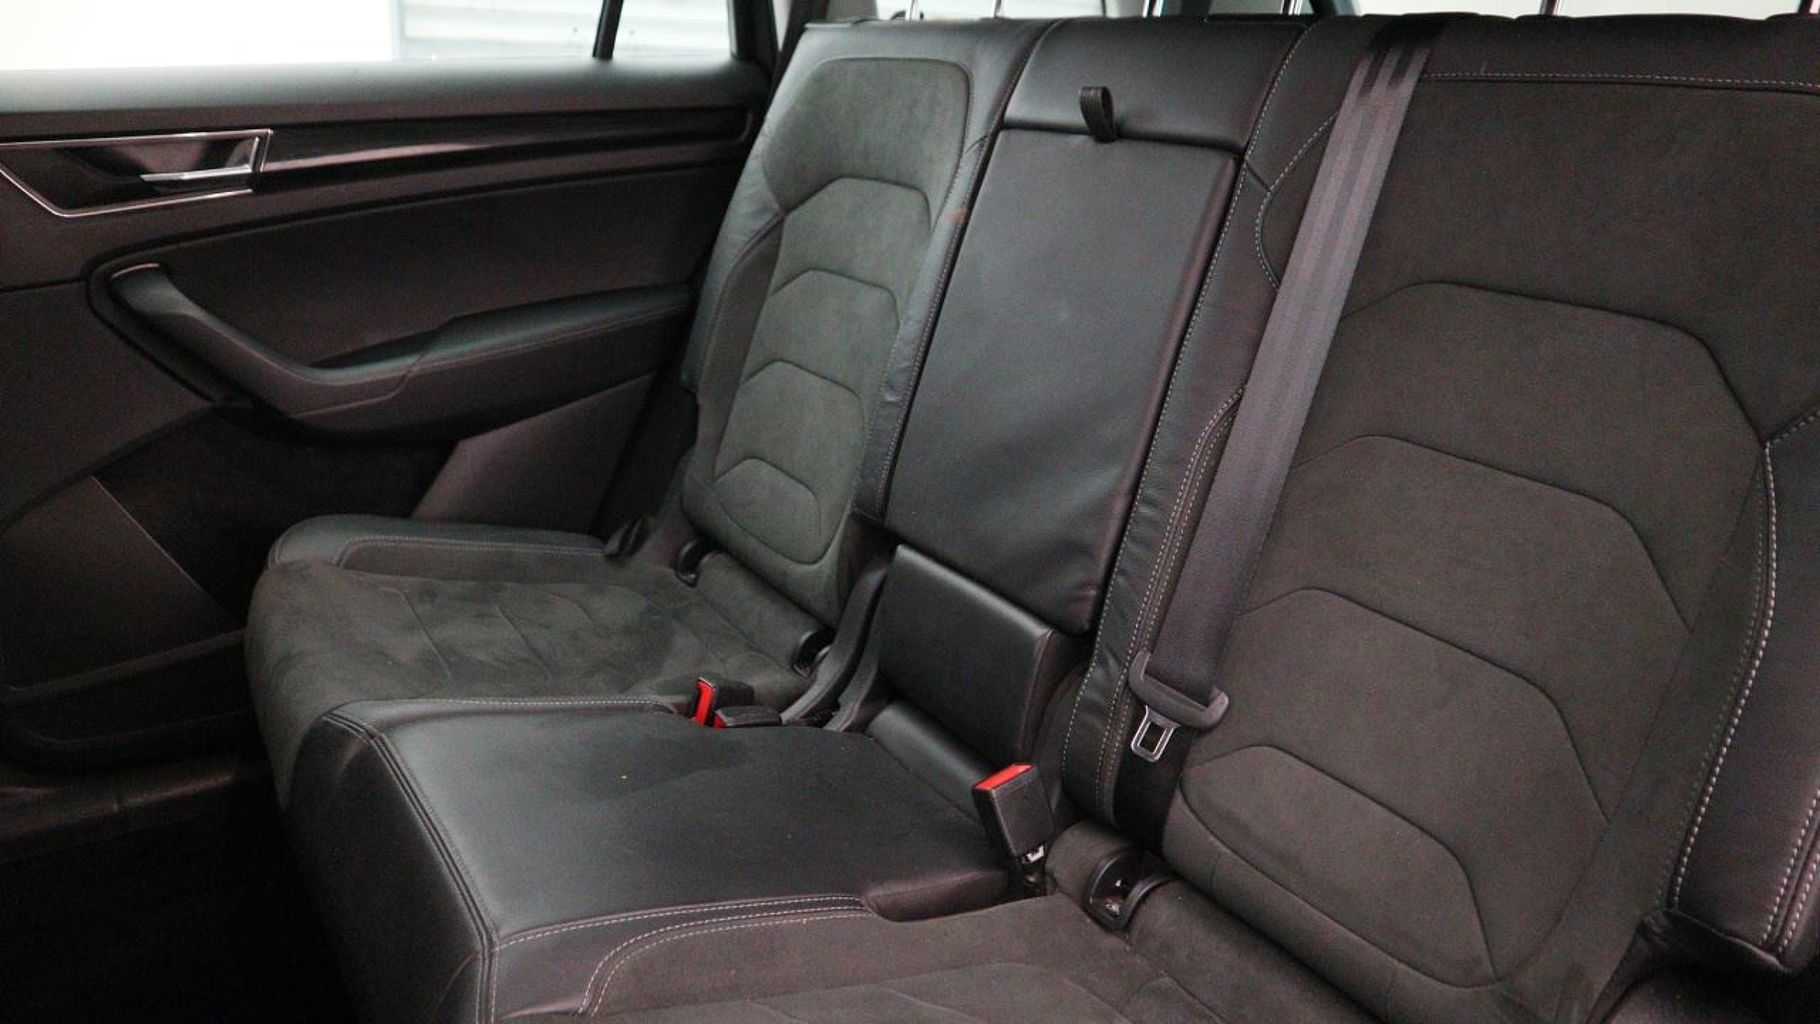 SKODA Kodiaq 1.5 TSI (150ps) SE L (7 seats) ACT DSG SUV